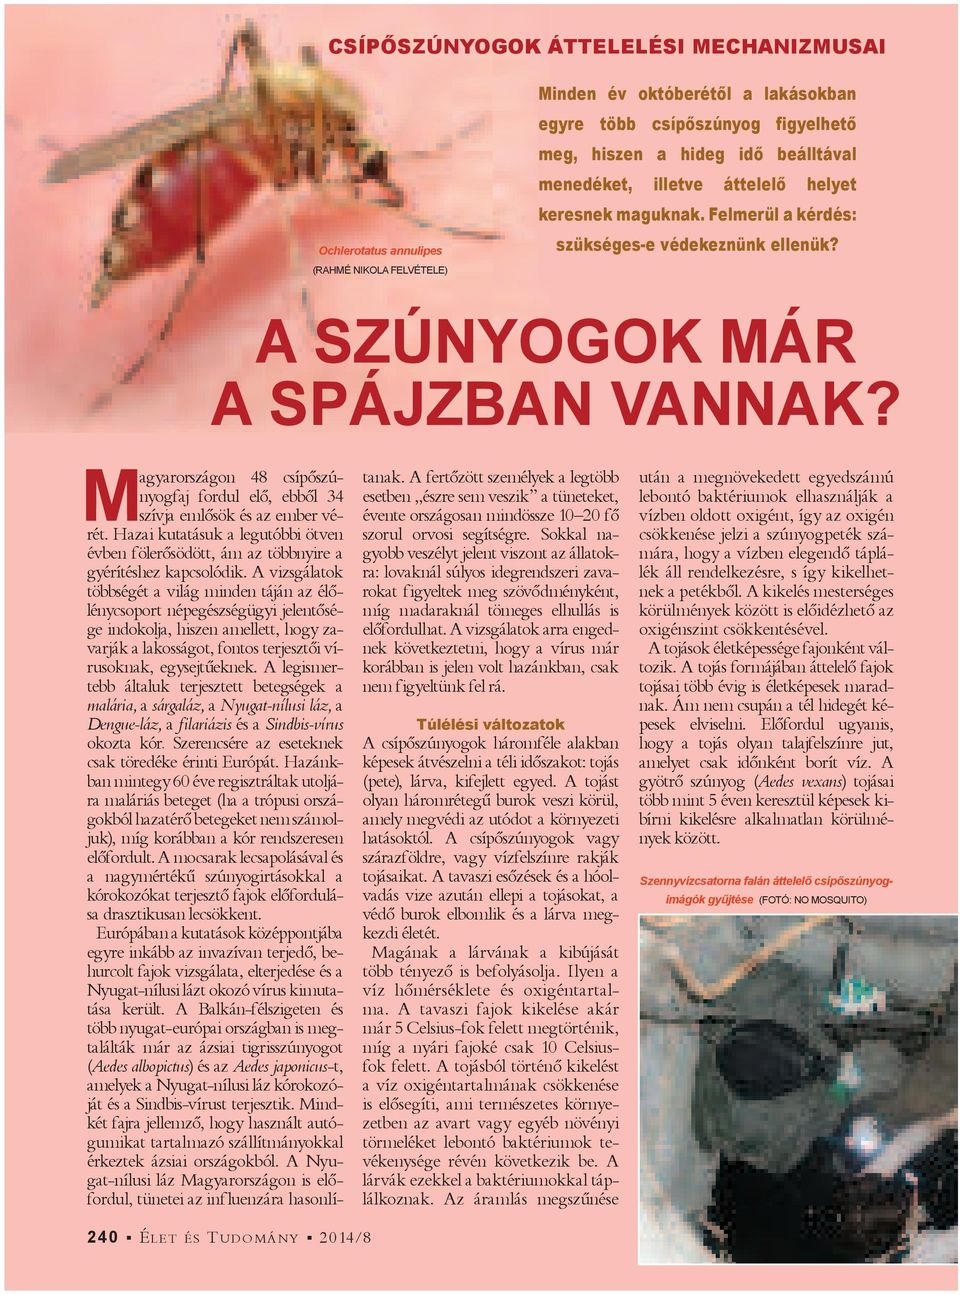 M agyarországon 48 csí pő szúnyog faj fordul elő, ebből 34 szívja emlősök és az ember vérét. Hazai kutatásuk a legutóbbi ötven évben fölerősödött, ám az többnyire a gyérítéshez kapcsolódik.